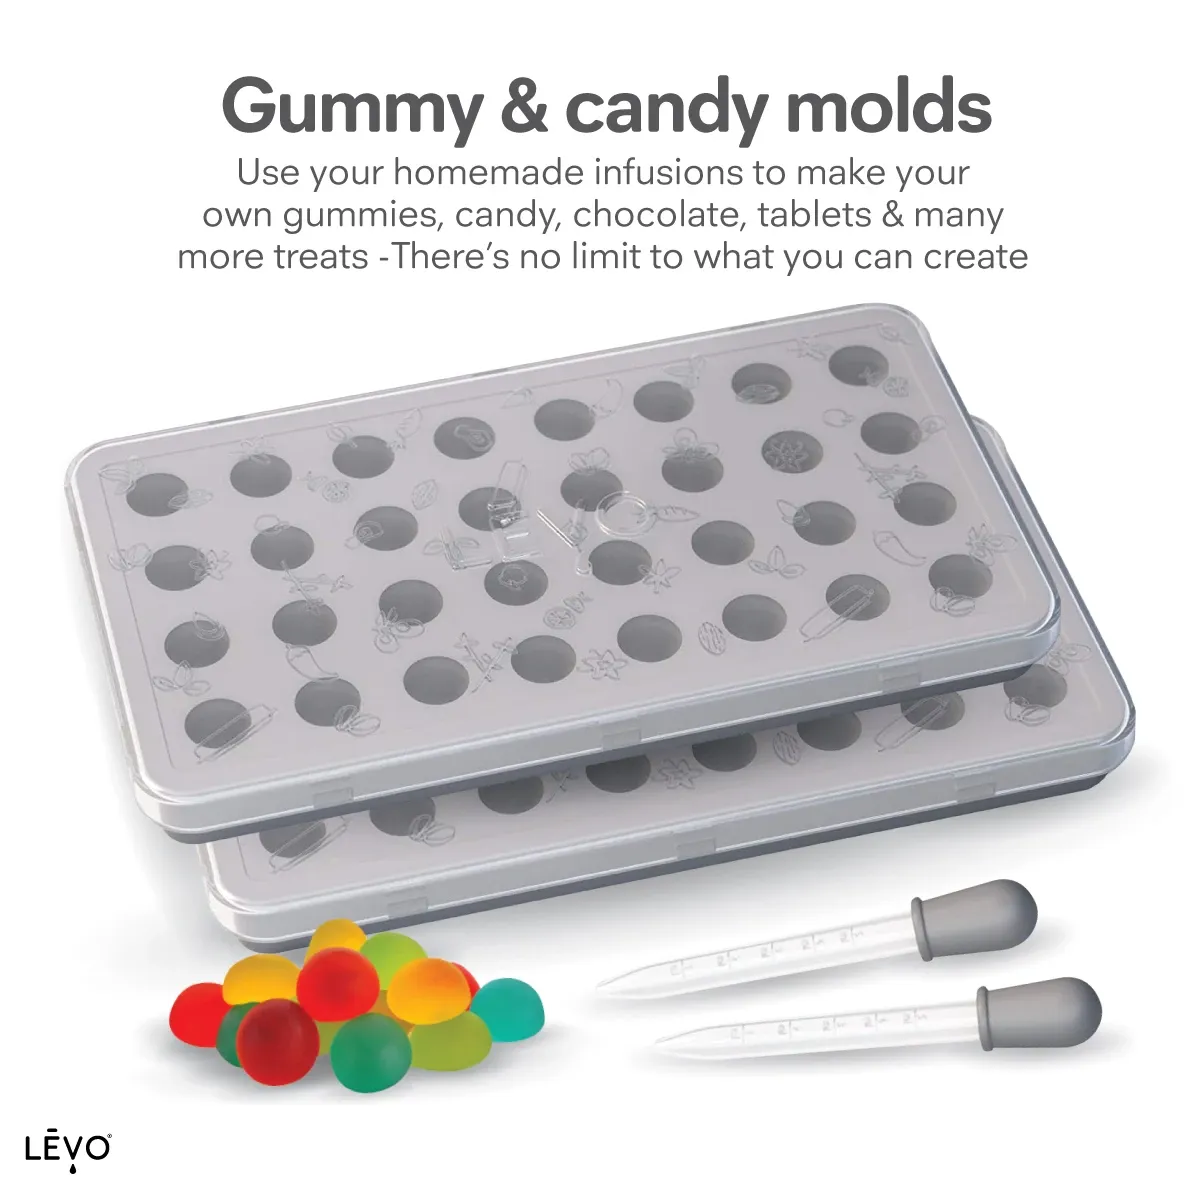 LEVO: Make Yummy Gummies